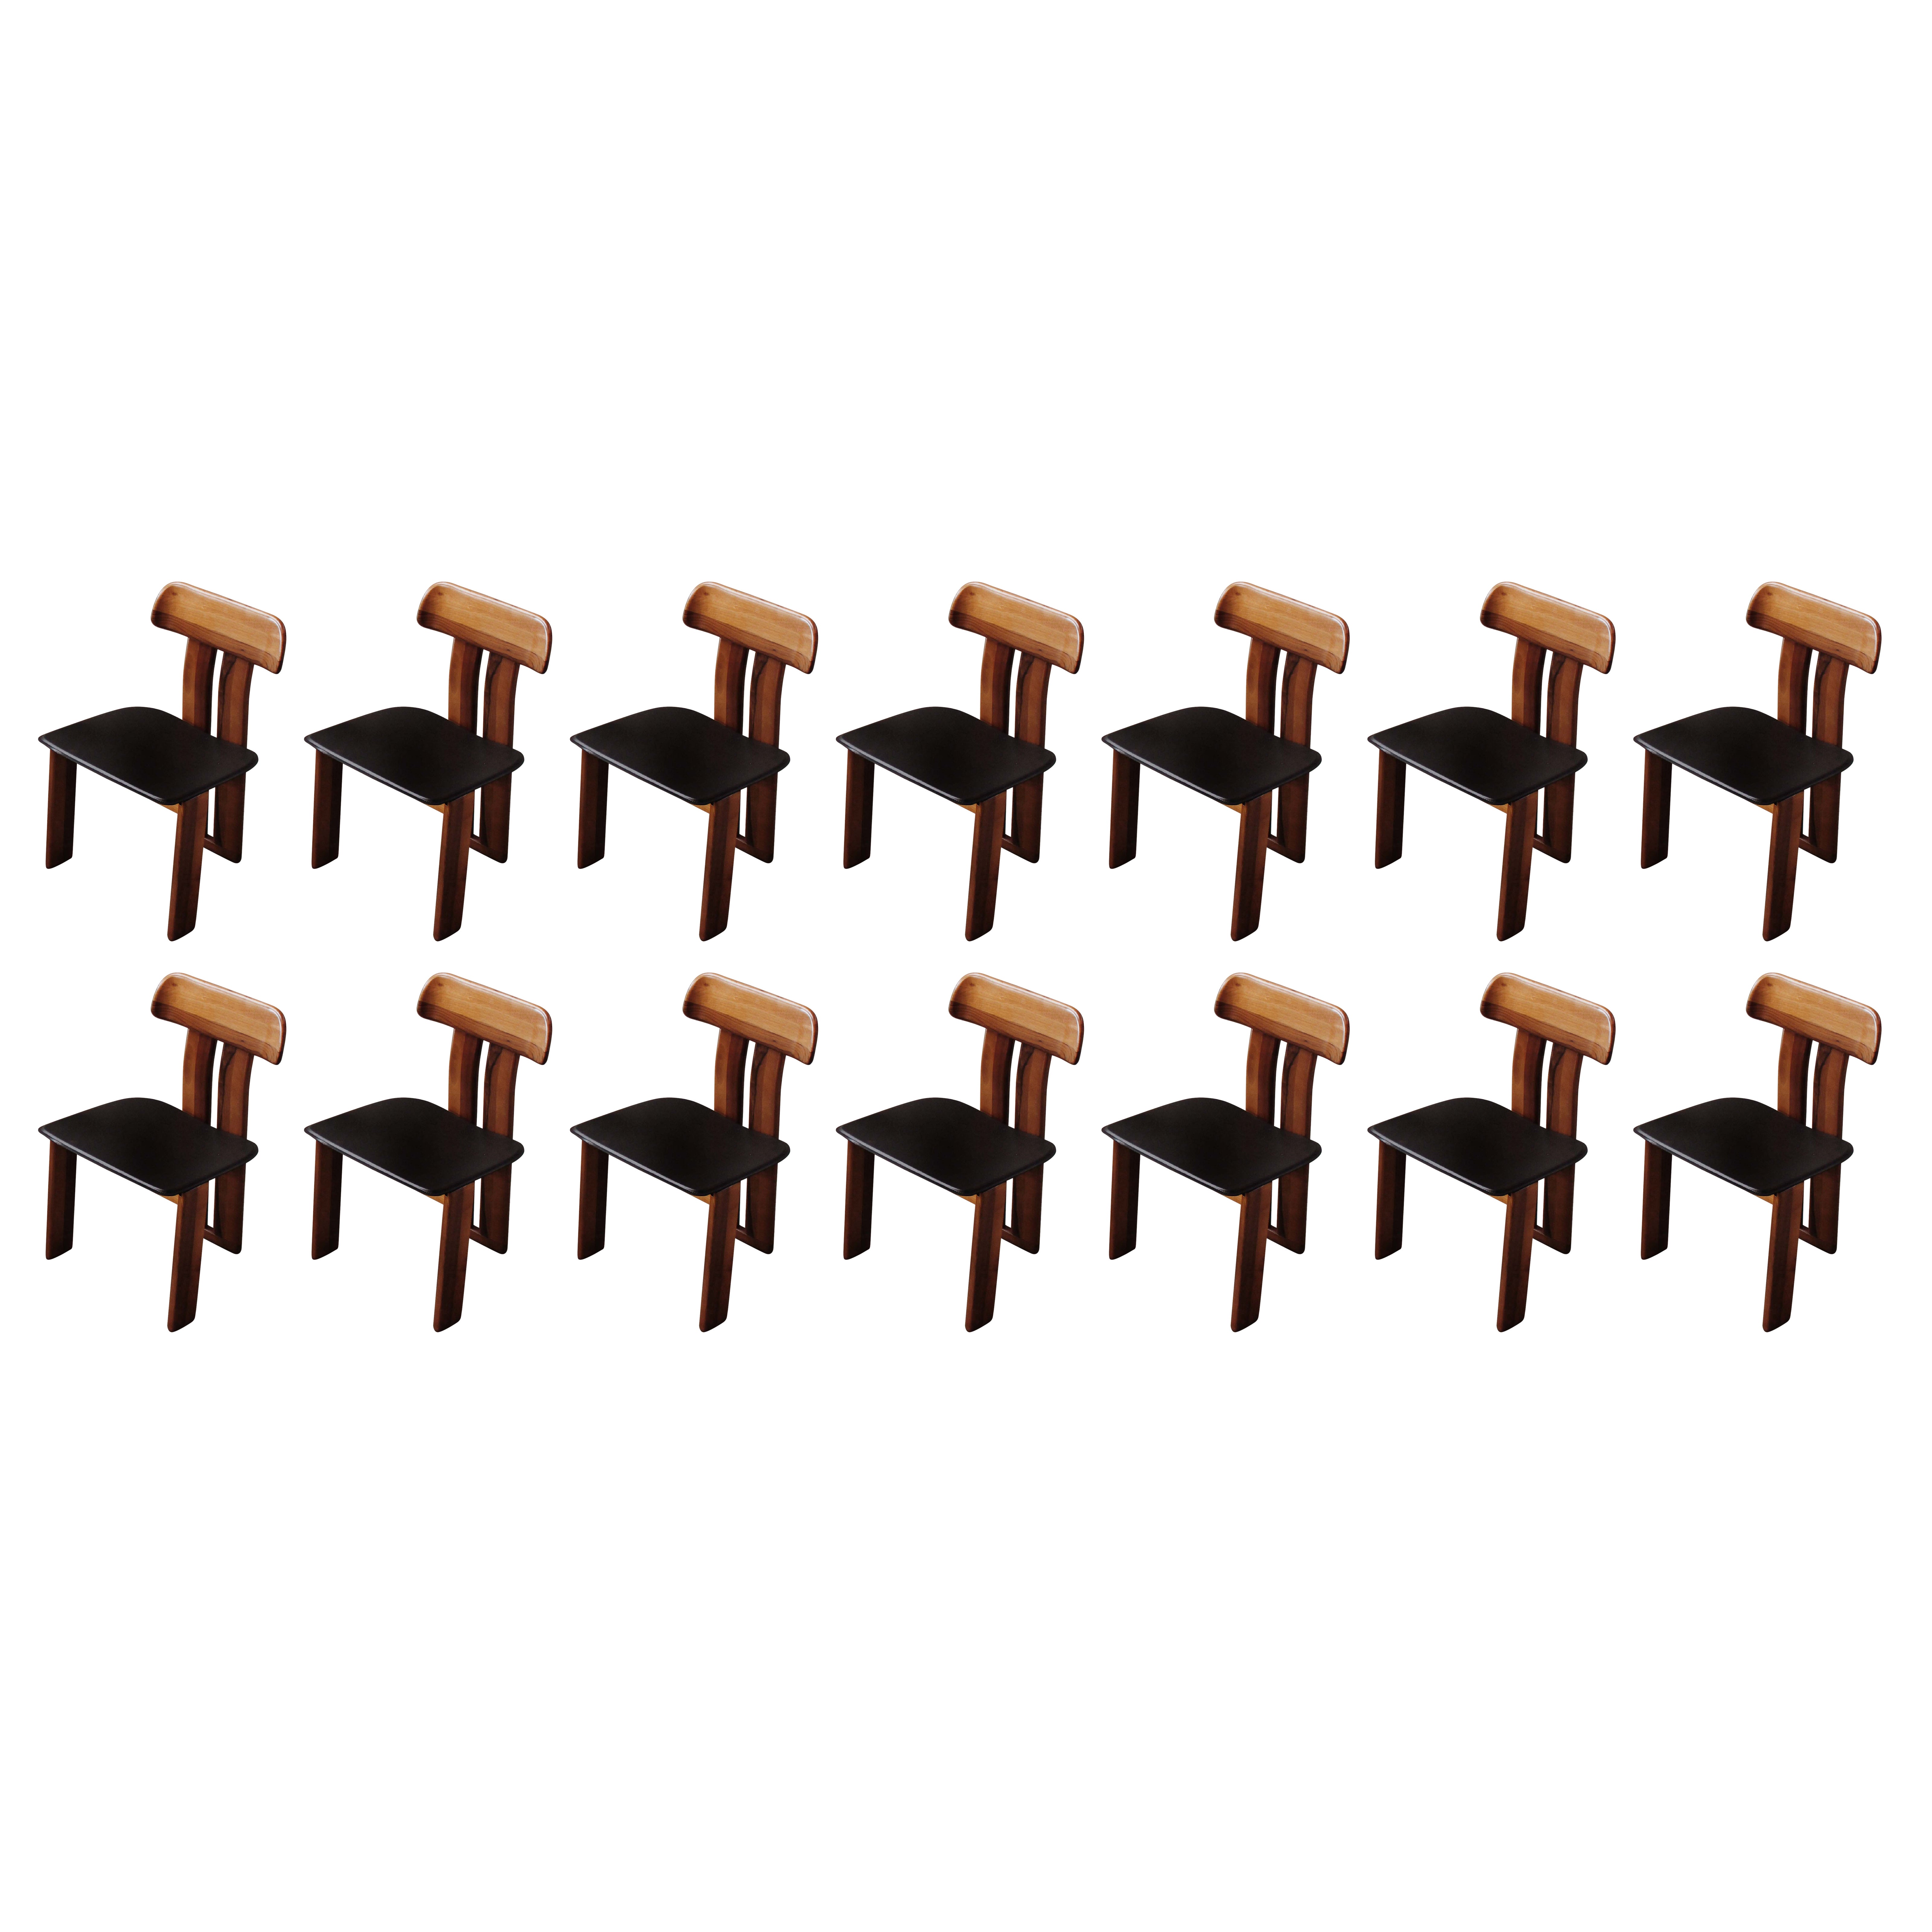 Mario Marenco „Sapporo“-Stühle für Mobil Girgi, 1970, Satz von 14 Stühlen